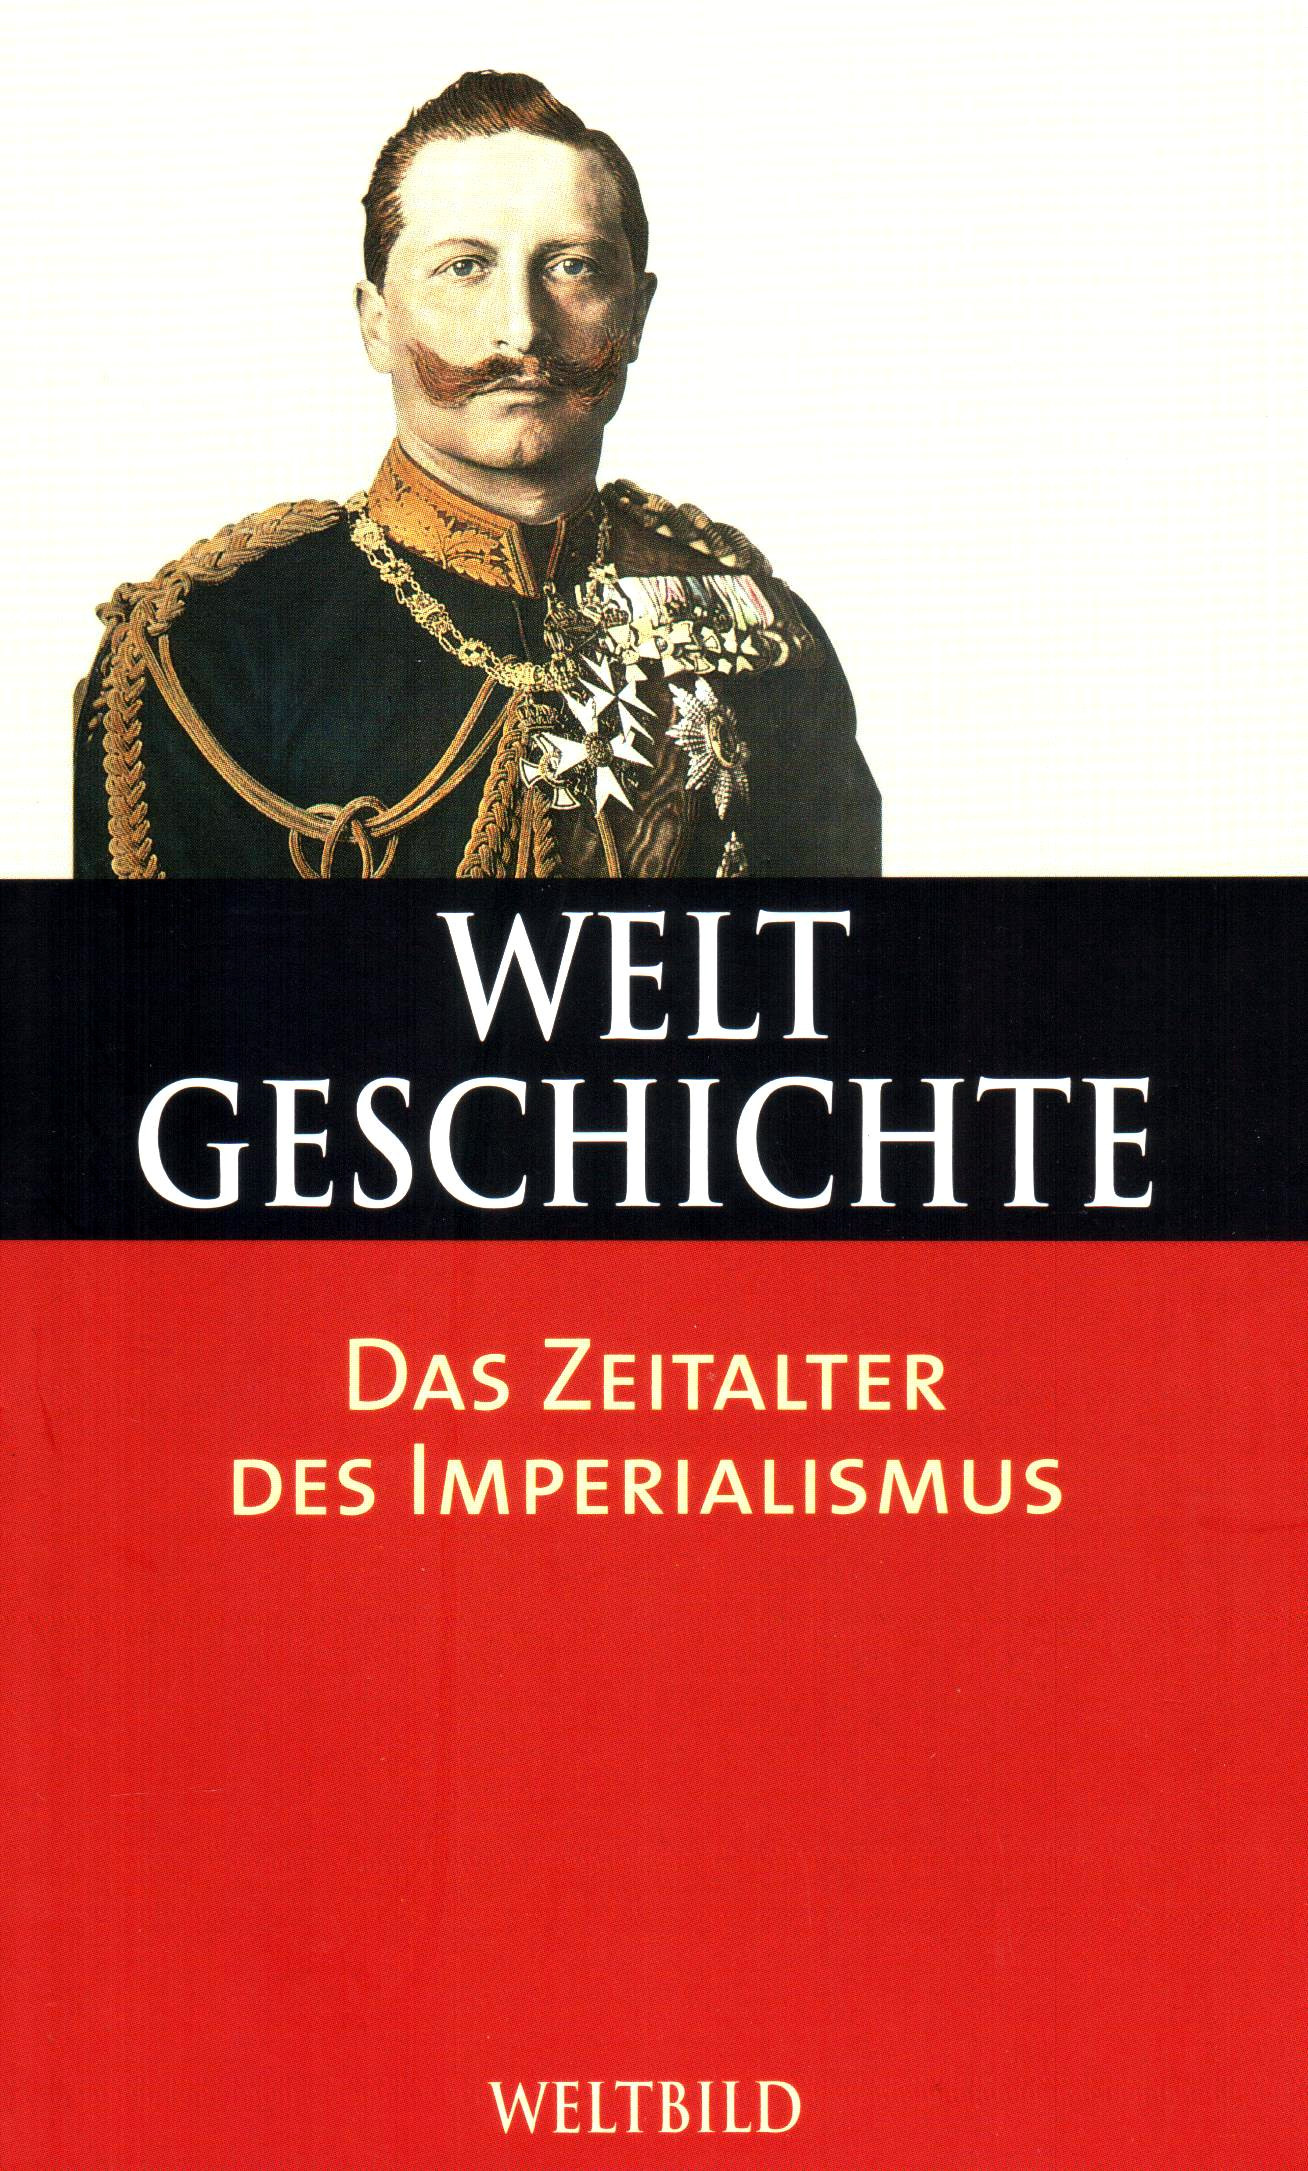 Weltgeschichte (28) Das Zeitalter des Imperialismus